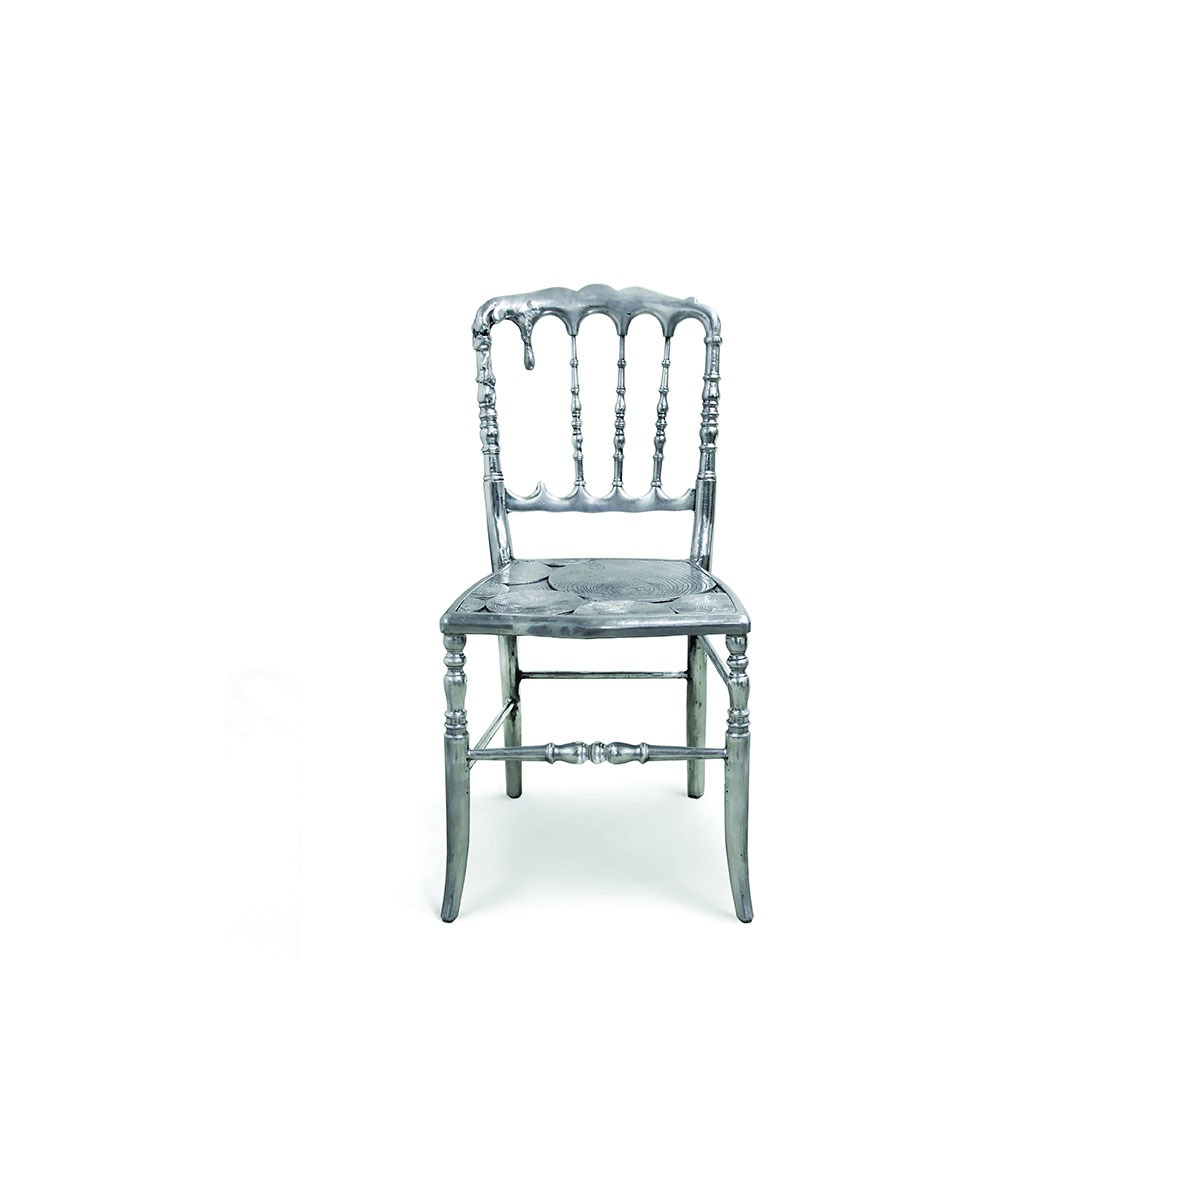 emporium silver chair boca do lobo 01 Maison &#038; Objet Paris September 2018